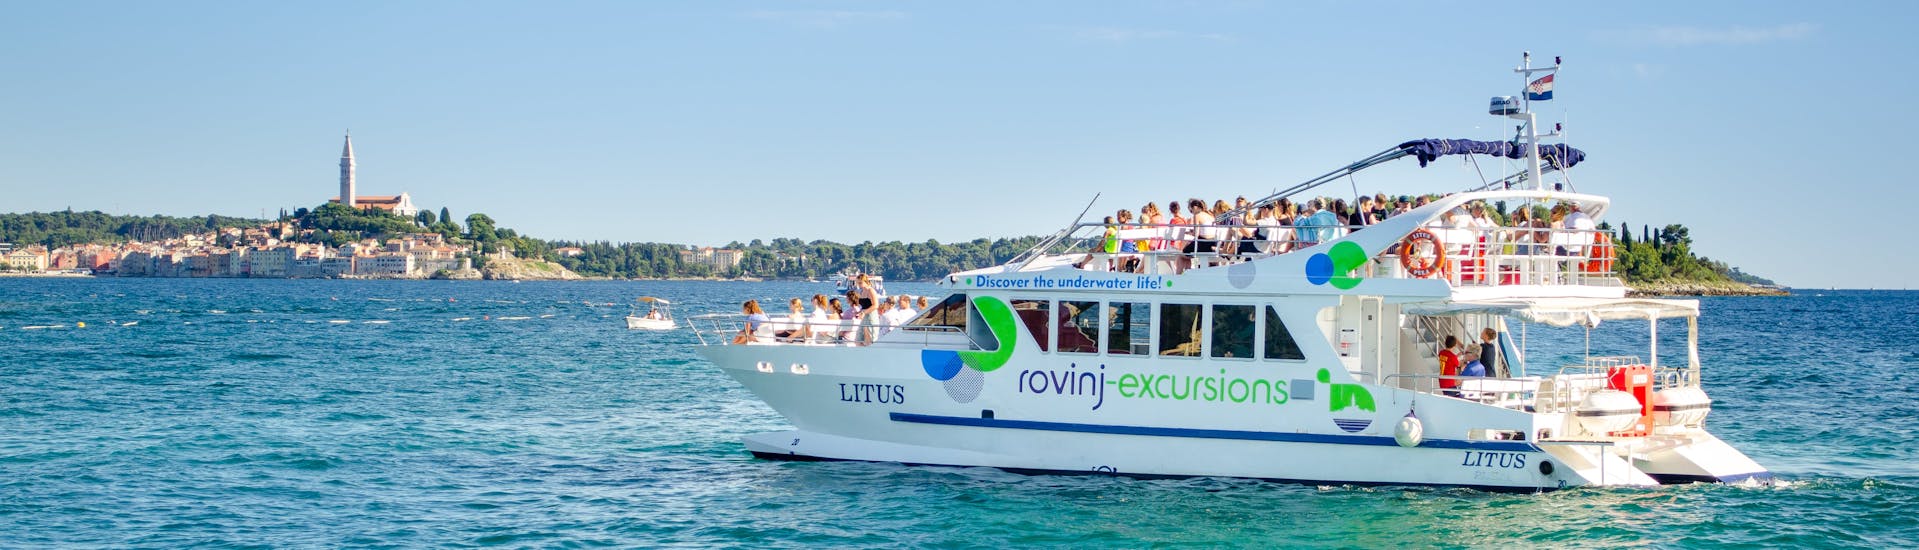 Das Boot LITUS im kristallklaren Wasser von Istrien während der Katamaran-Tour bei Sonnenuntergang um Rovinj mit Delfinbeobachtung mit Rovinj Excursions.